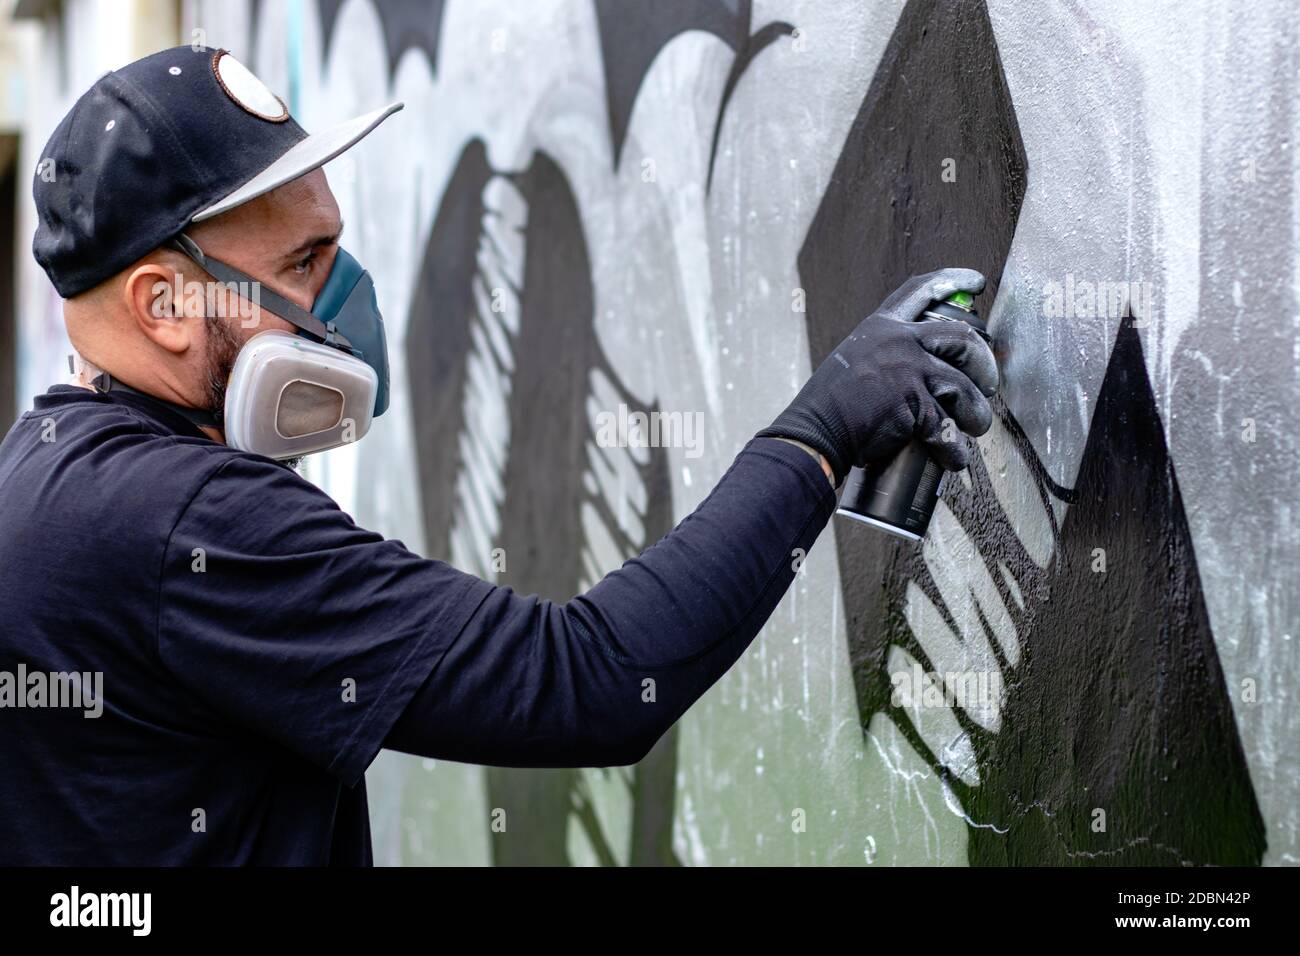 Graffiti-Künstler in Aktion, Zeichnung an der Wand mit Aerosol-Sprühfarbe  in einer Dose, tragen Schutzmaske / Atemschutzmaske mit Filtern.  Straßenkunst Stockfotografie - Alamy